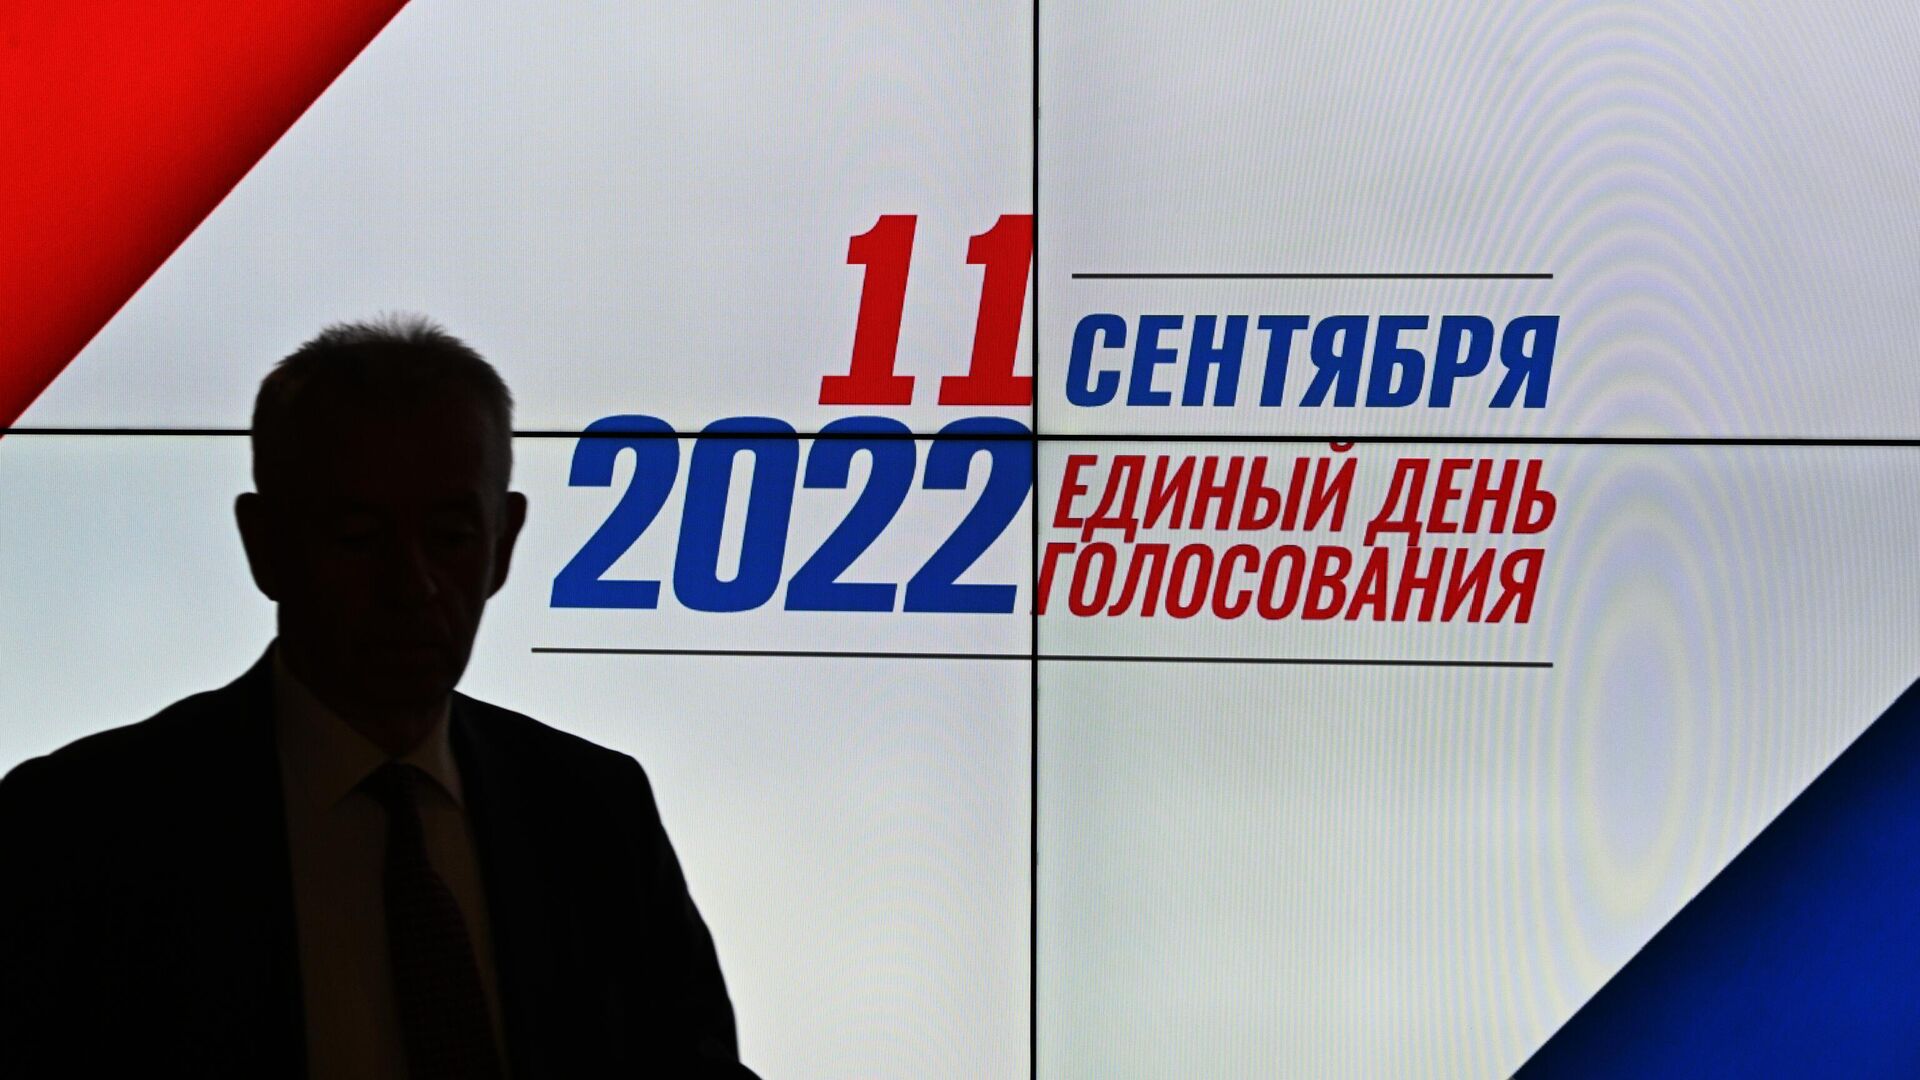 Прийти на выборы 17 в 12 часов. День голосования 2022. Выборы депутатов 2022. Единый день голосования в России. Единый день голосования 11 сентября 2022 года.